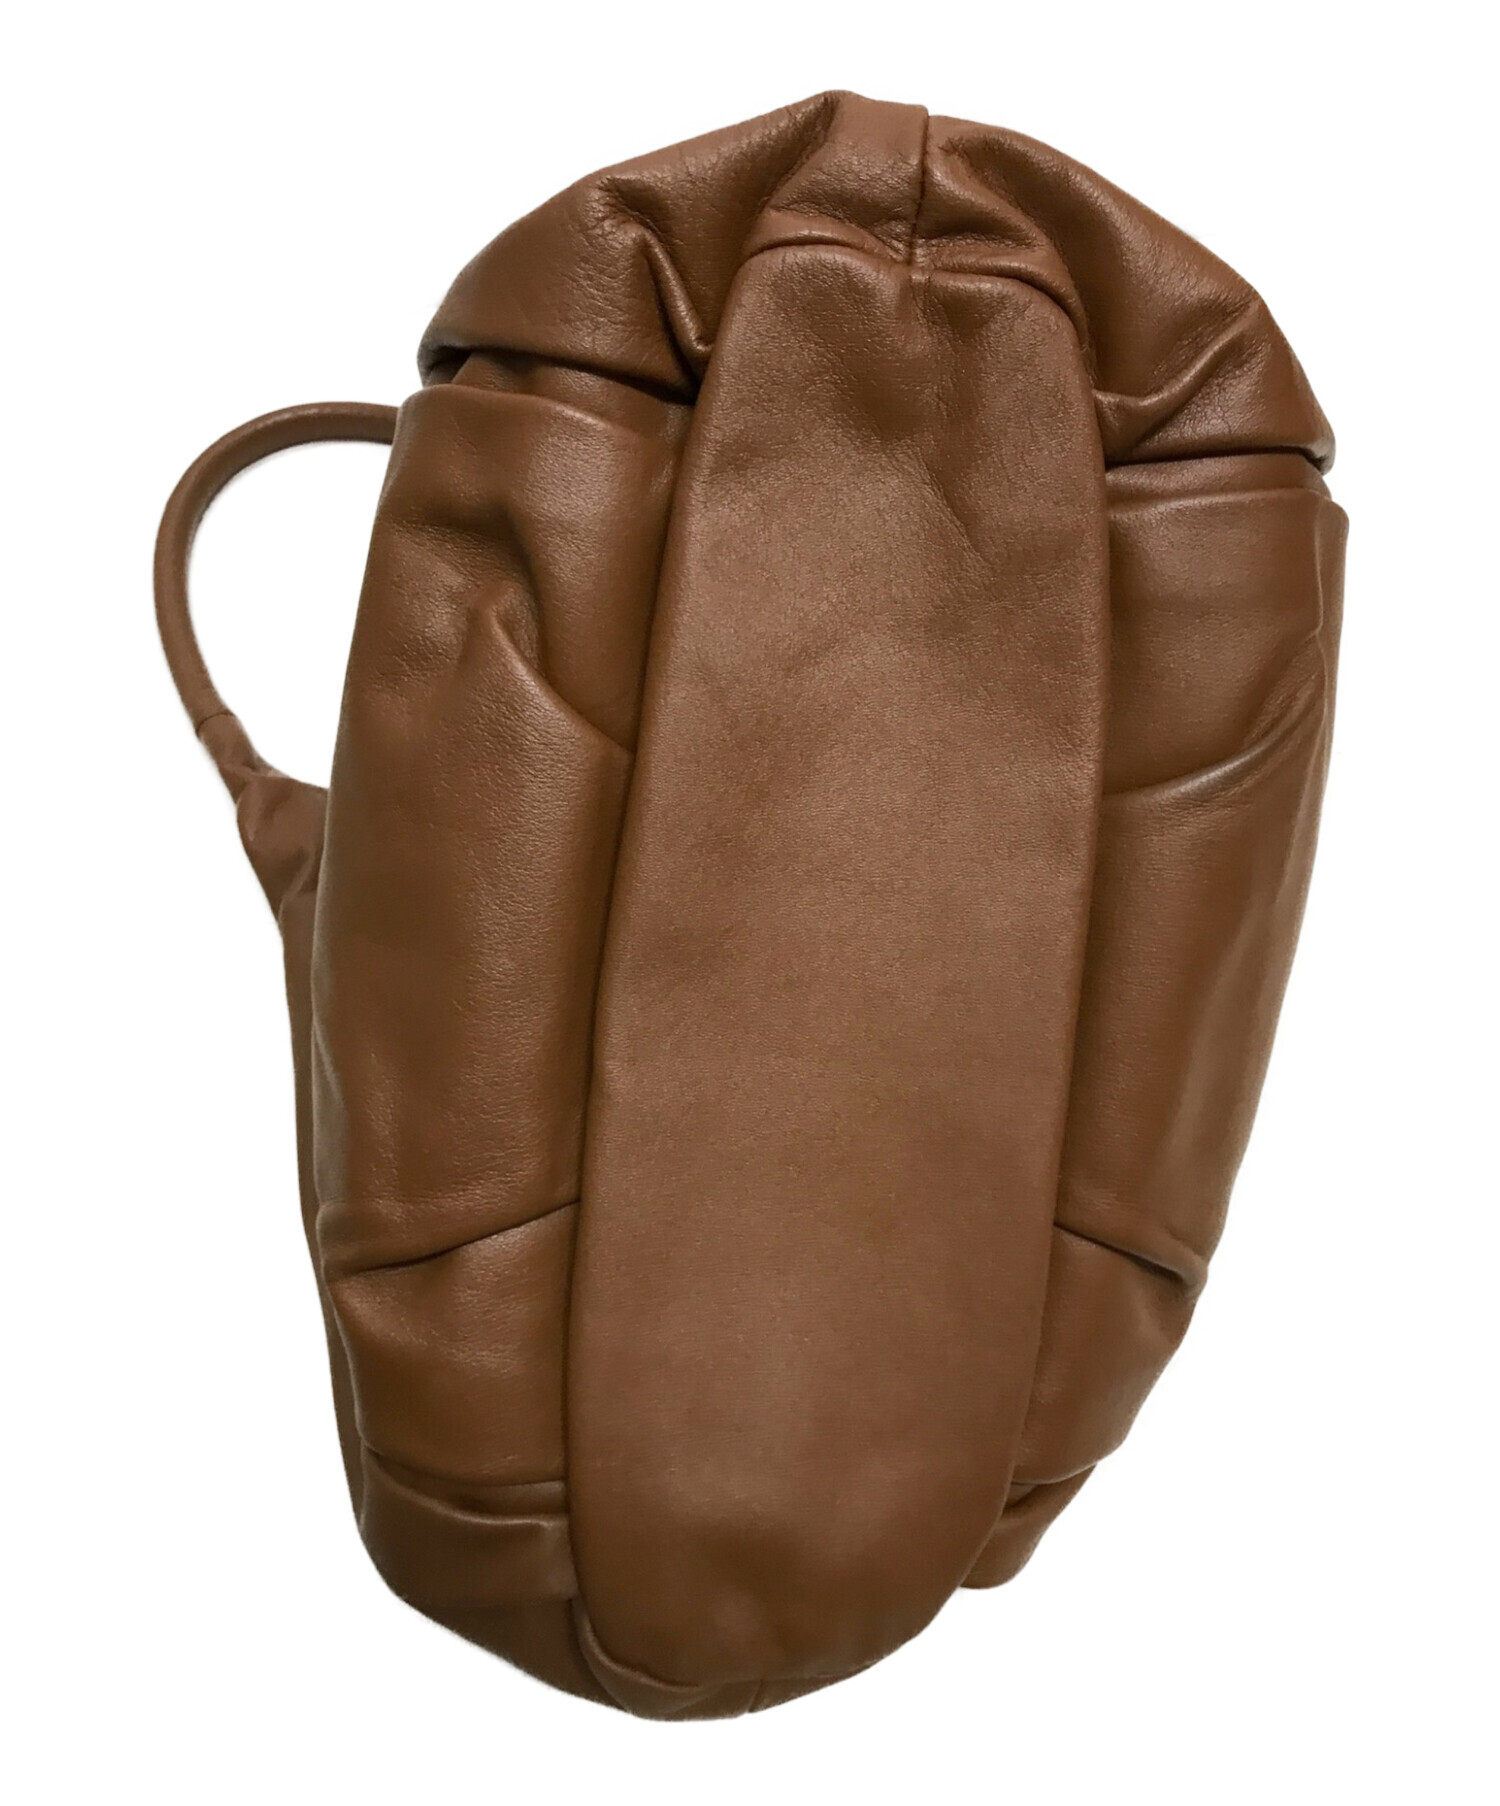 土屋鞄 (ツチヤカバン) トートバッグ ブラウン サイズ:下記参照